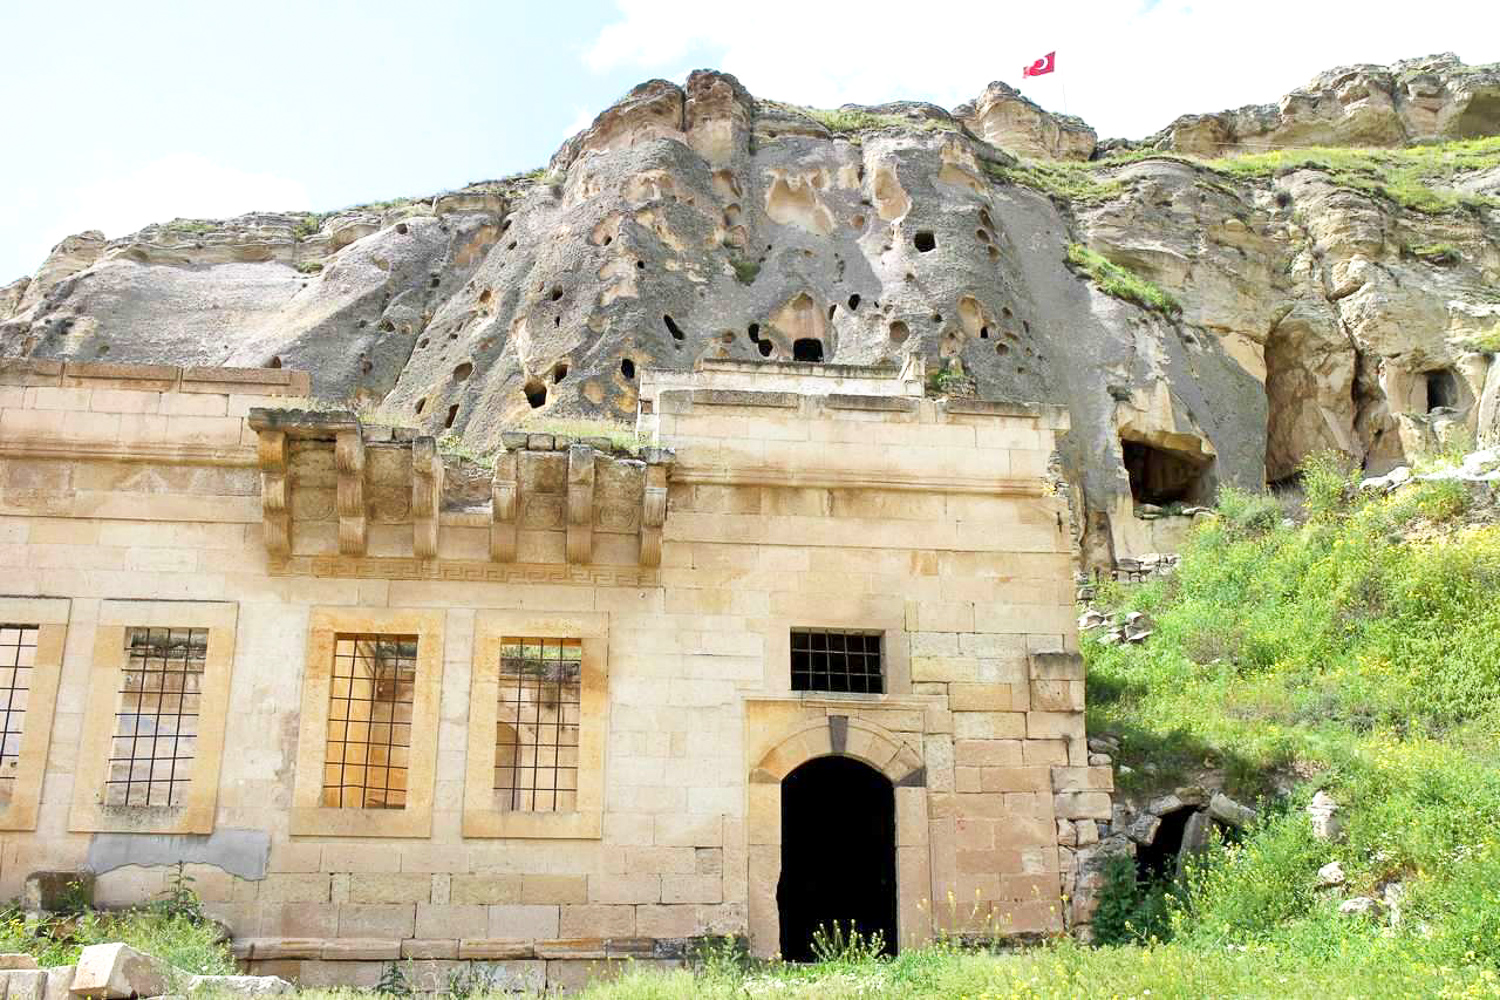 «Пещерная» конюшня, где на положении раба жил и ухаживал за лошадьми святой Иоанн Русский. Город Ургюп. Турция